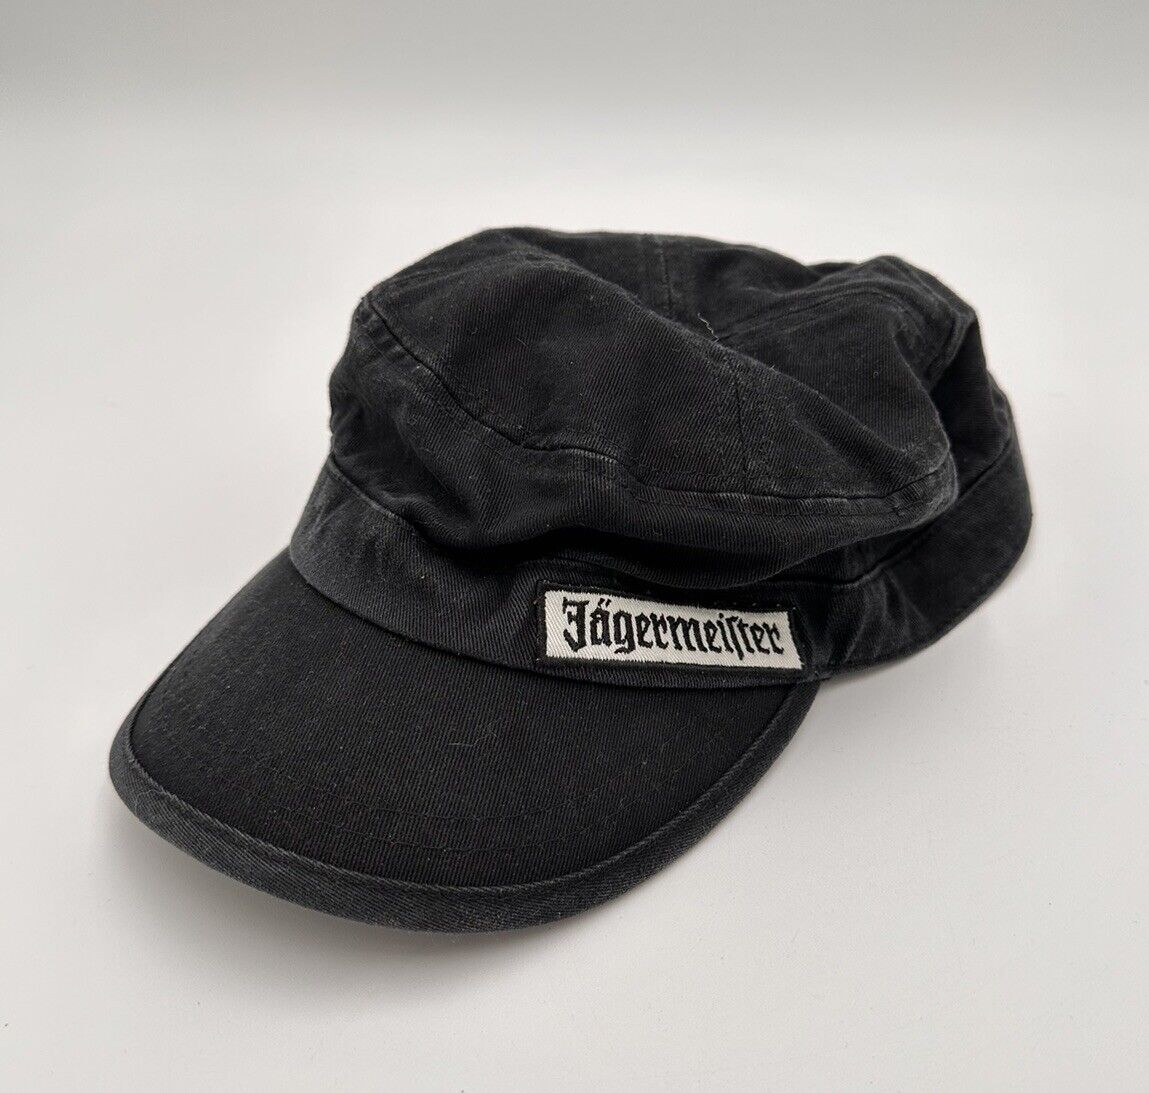 Jagermeister Vintage Cadet Style Embroidered Adjustable Hat Cap